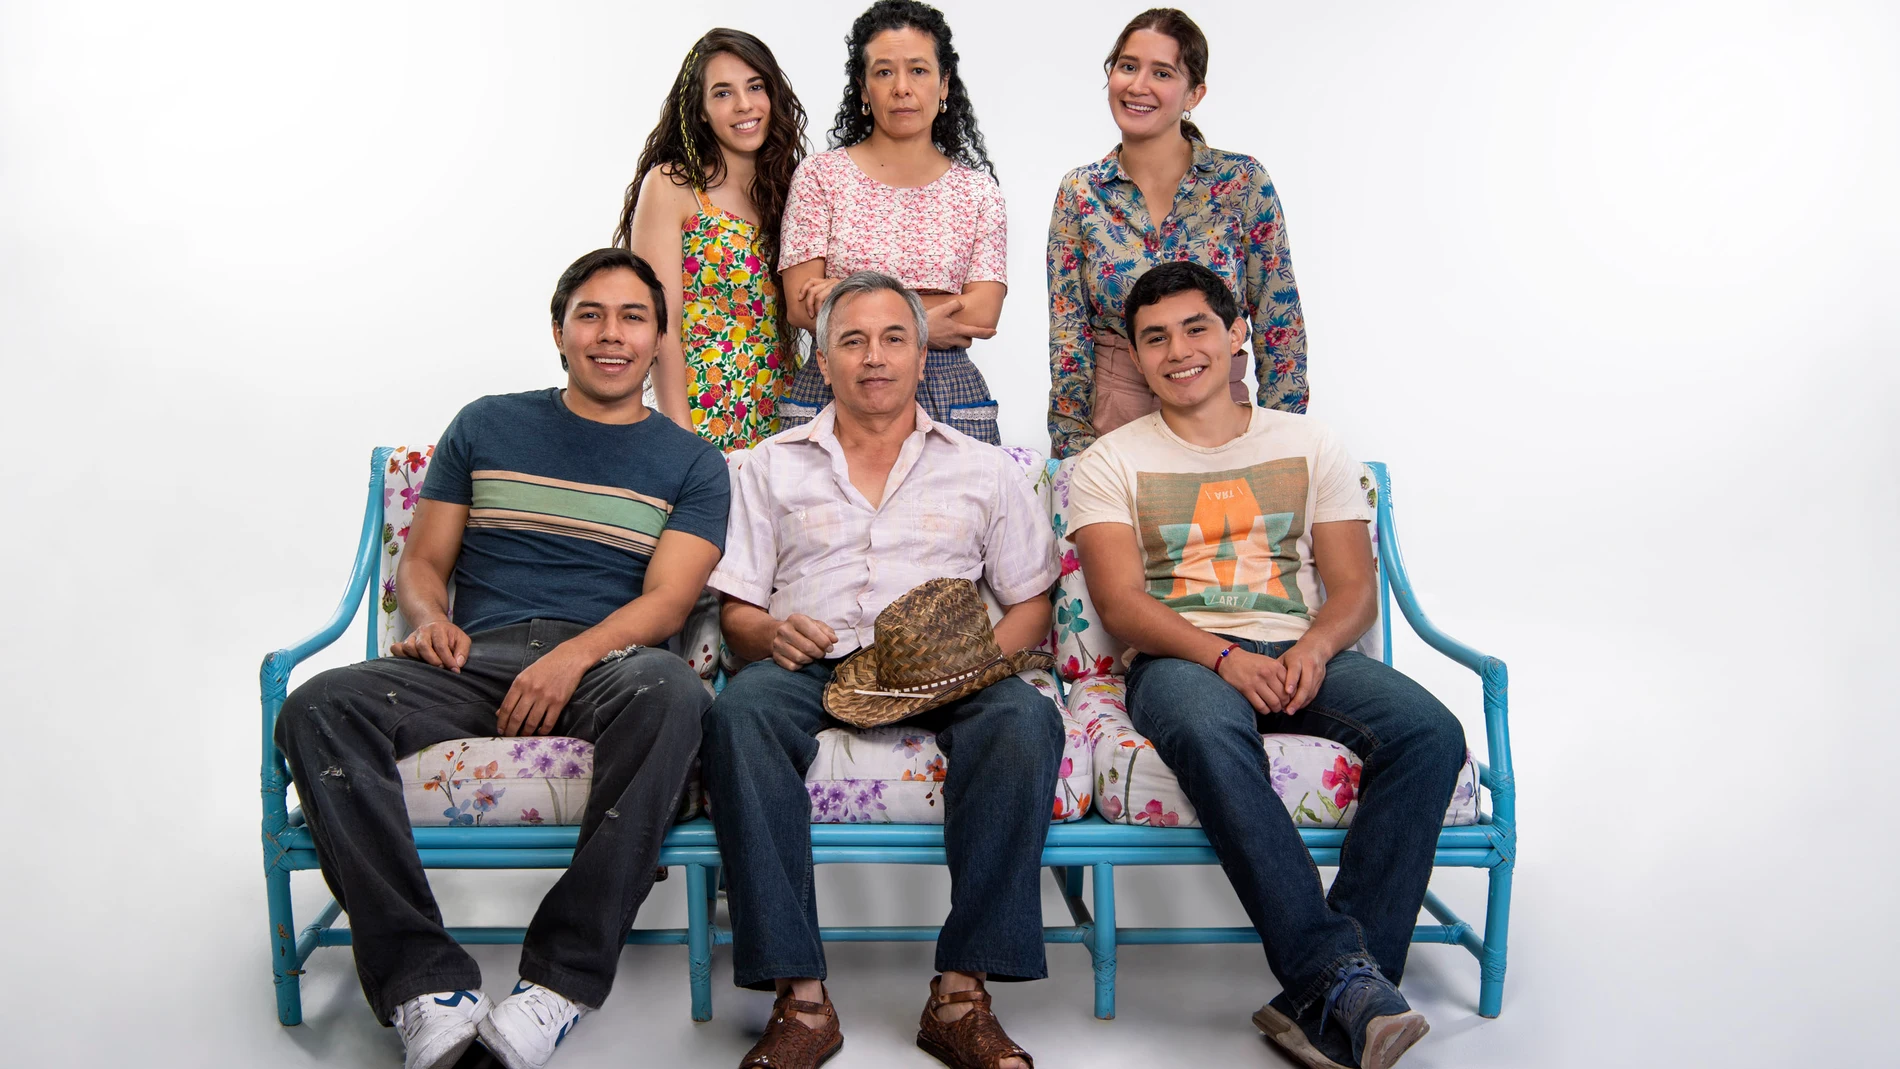 Familias protagnostas en ‘Vencer el pasado’, el nuevo éxito de la ficción latina